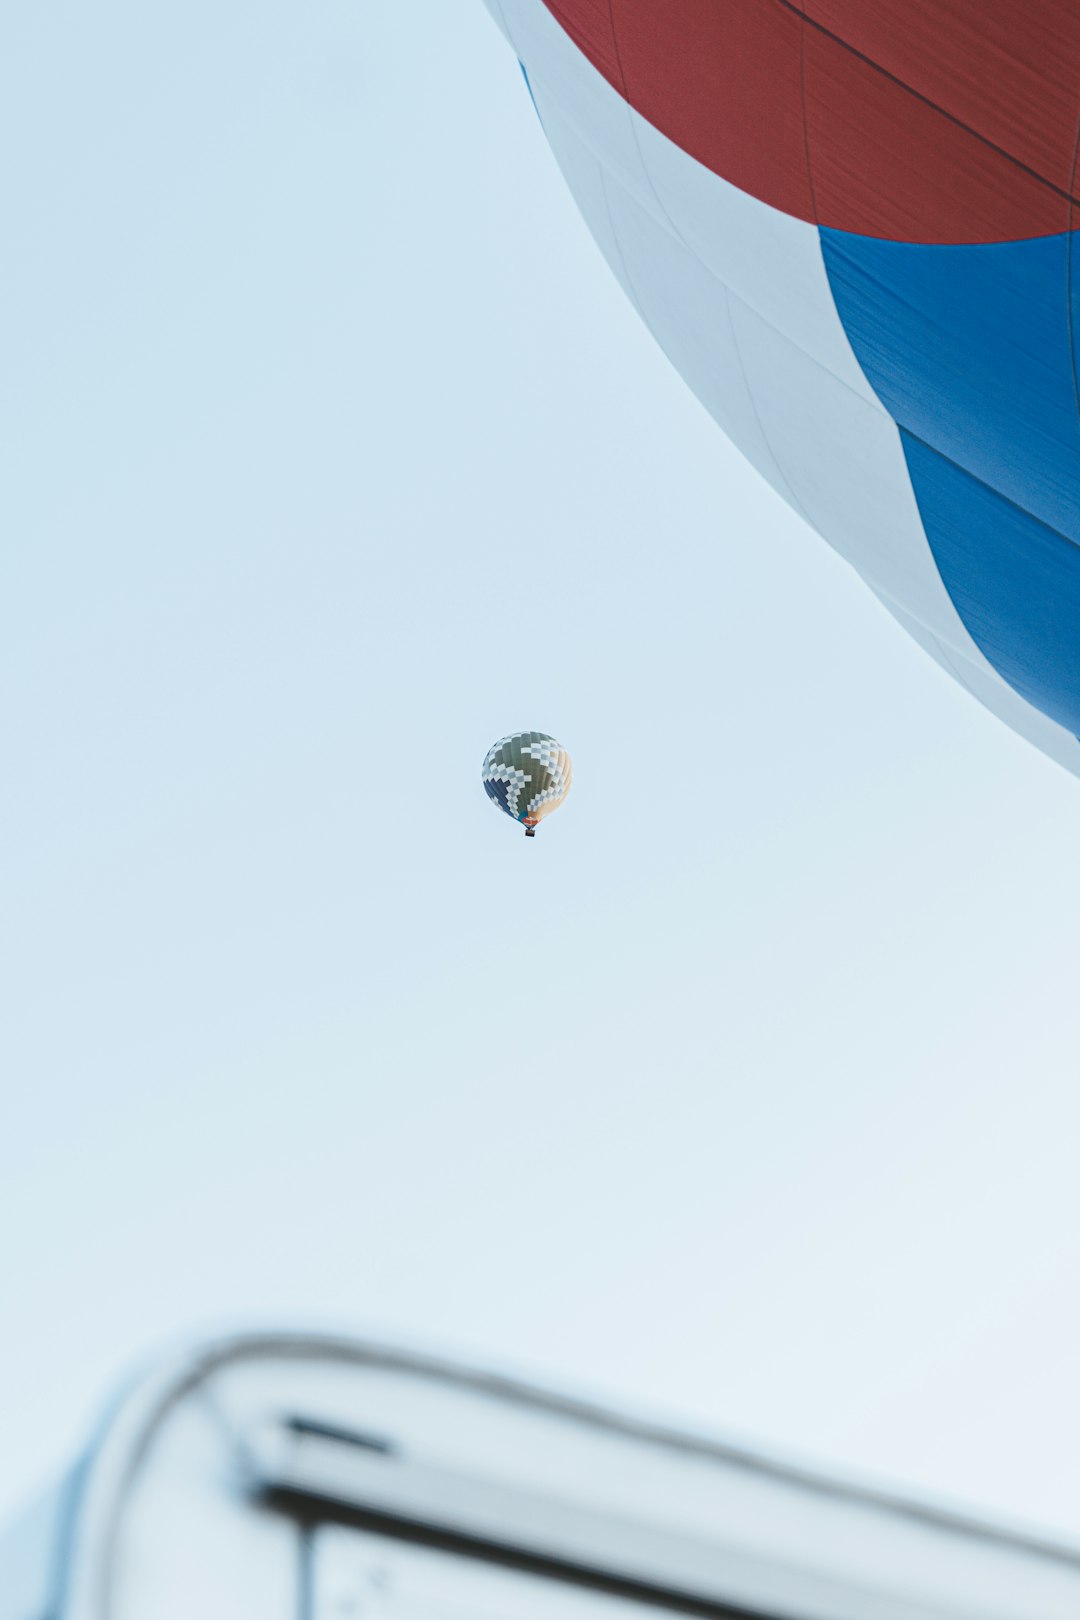 blue and white hot air balloon